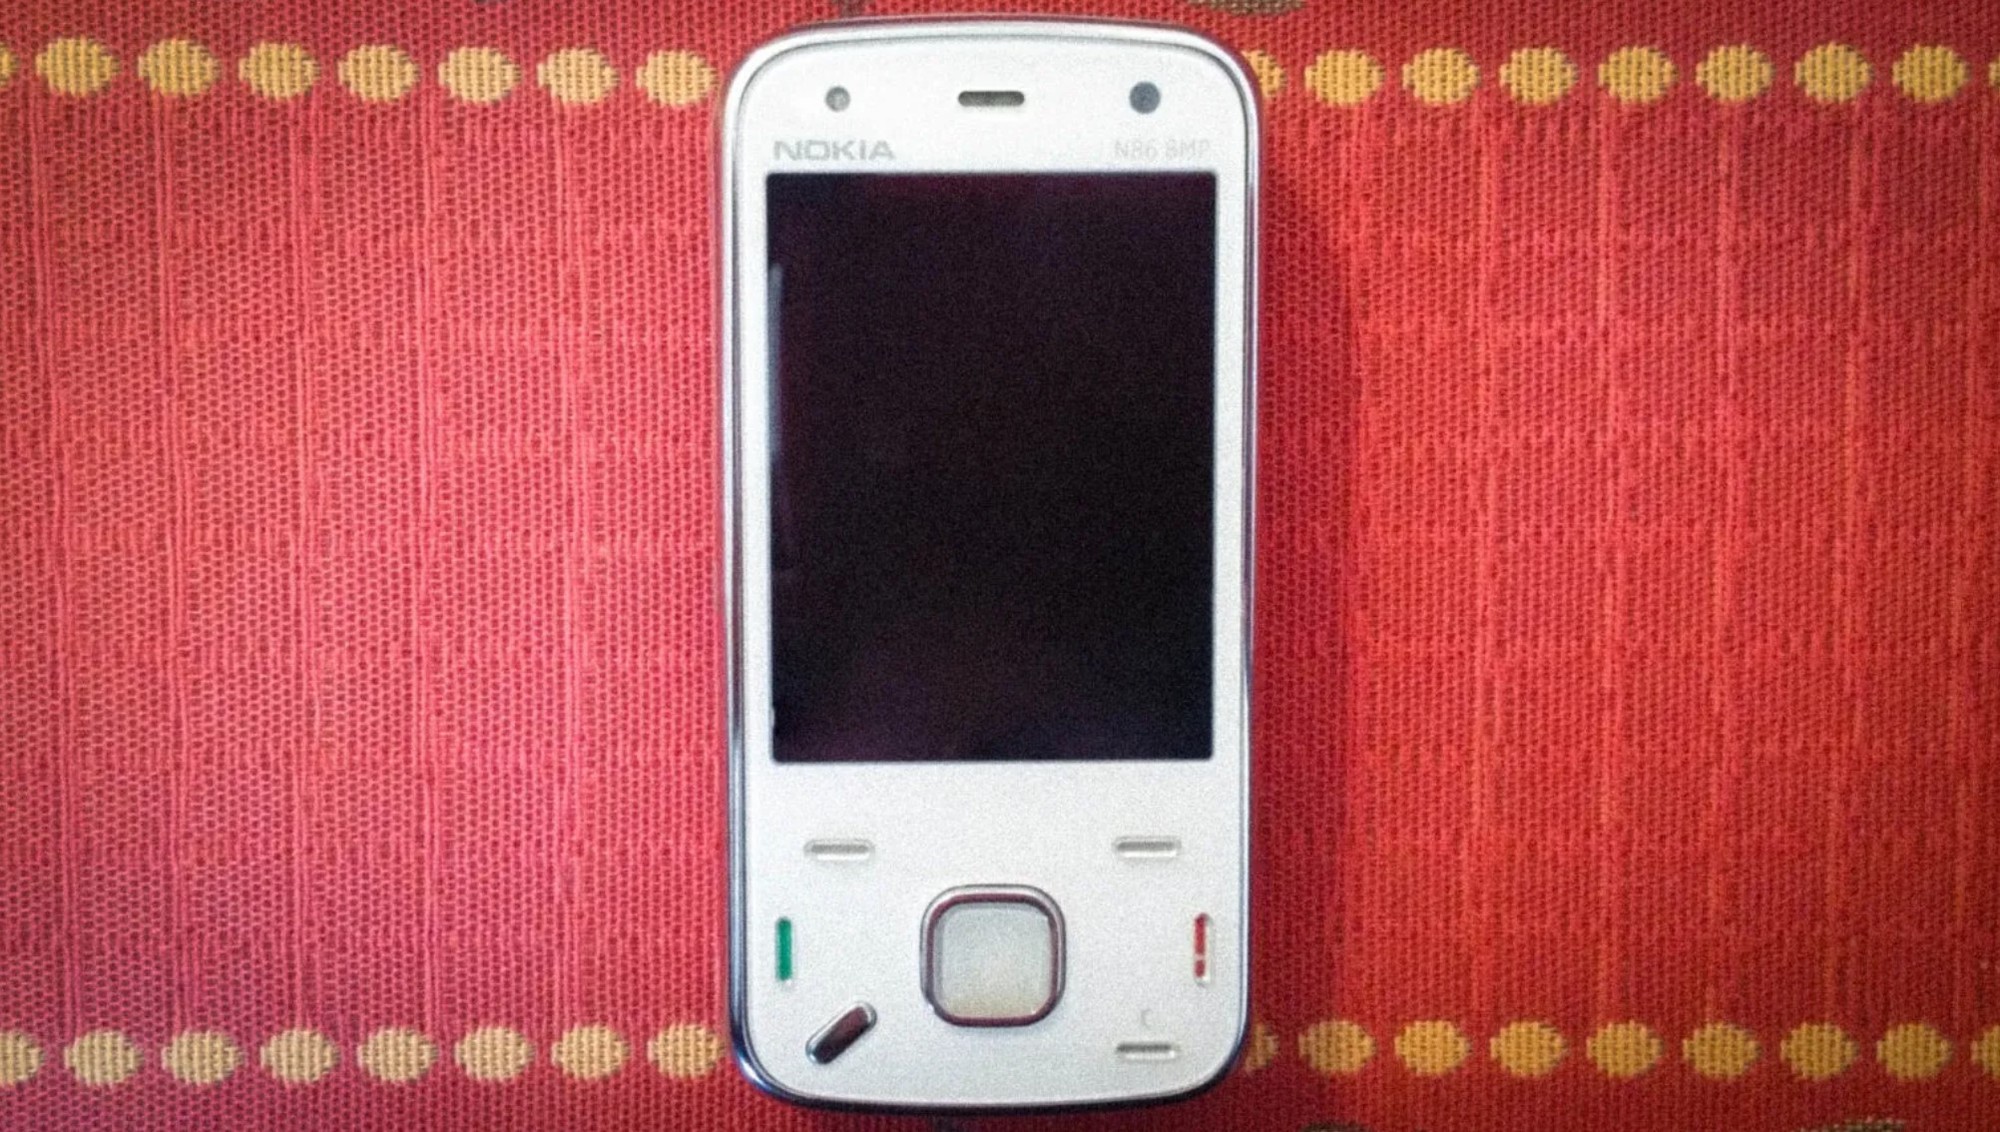 Dù rất hoài cổ về thời kỳ Nokia, Sony Ericsson, nhưng nhìn lại chúng thật tệ so với smartphone ngày nay- Ảnh 4.